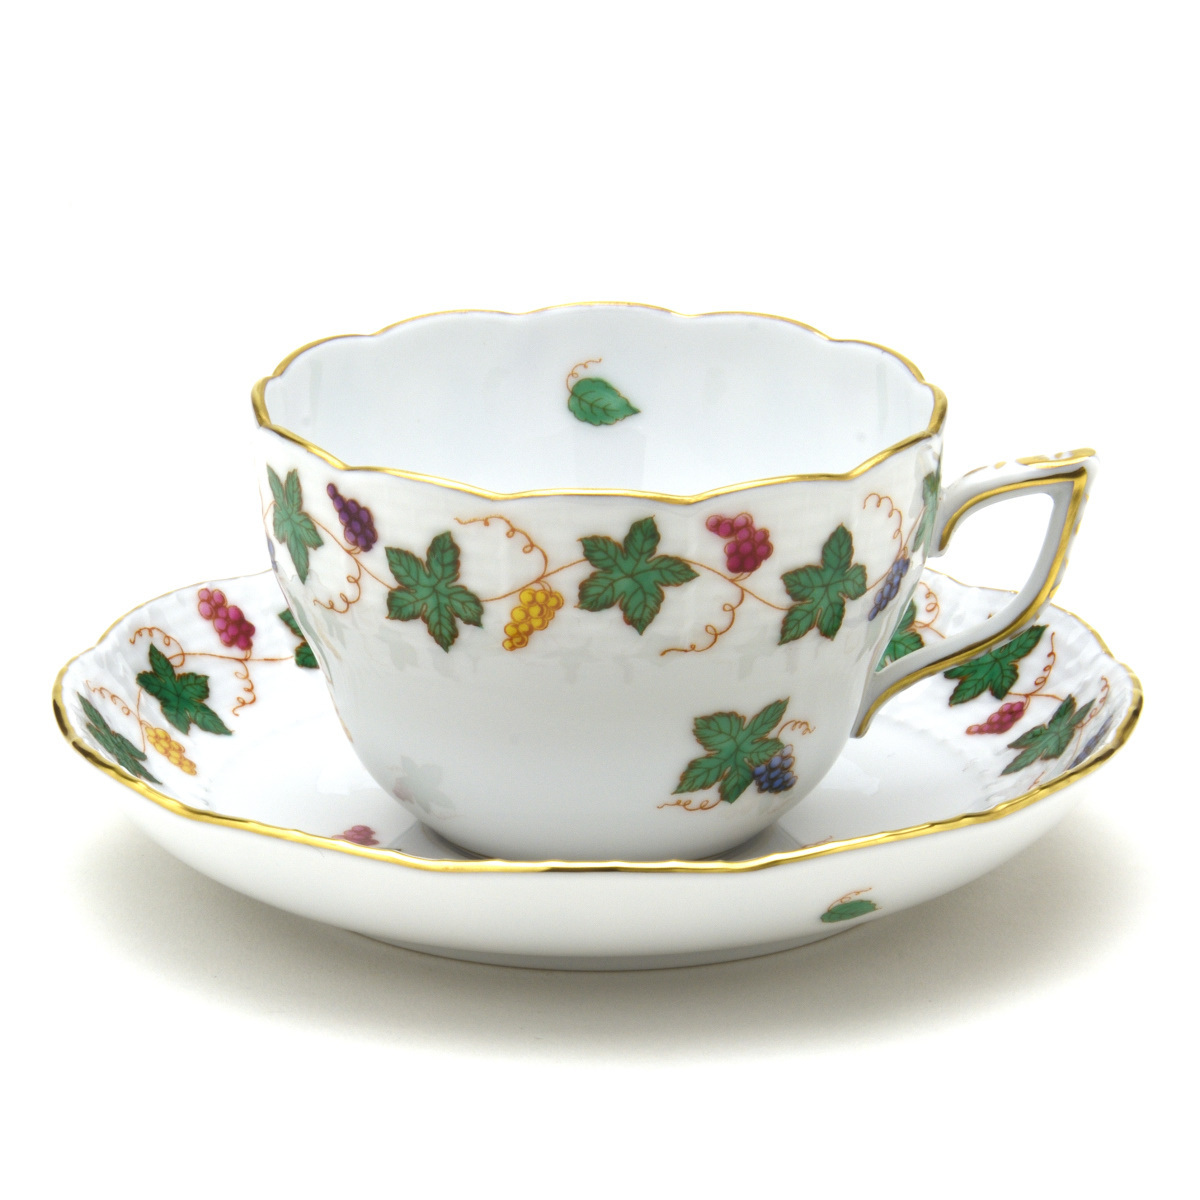 赫伦德 多用途杯碟 葡萄干花环 手绘瓷餐具 咖啡/茶杯餐具 匈牙利制造 新赫伦德, 茶具, 杯子和碟子, 咖啡, 无论是茶还是茶